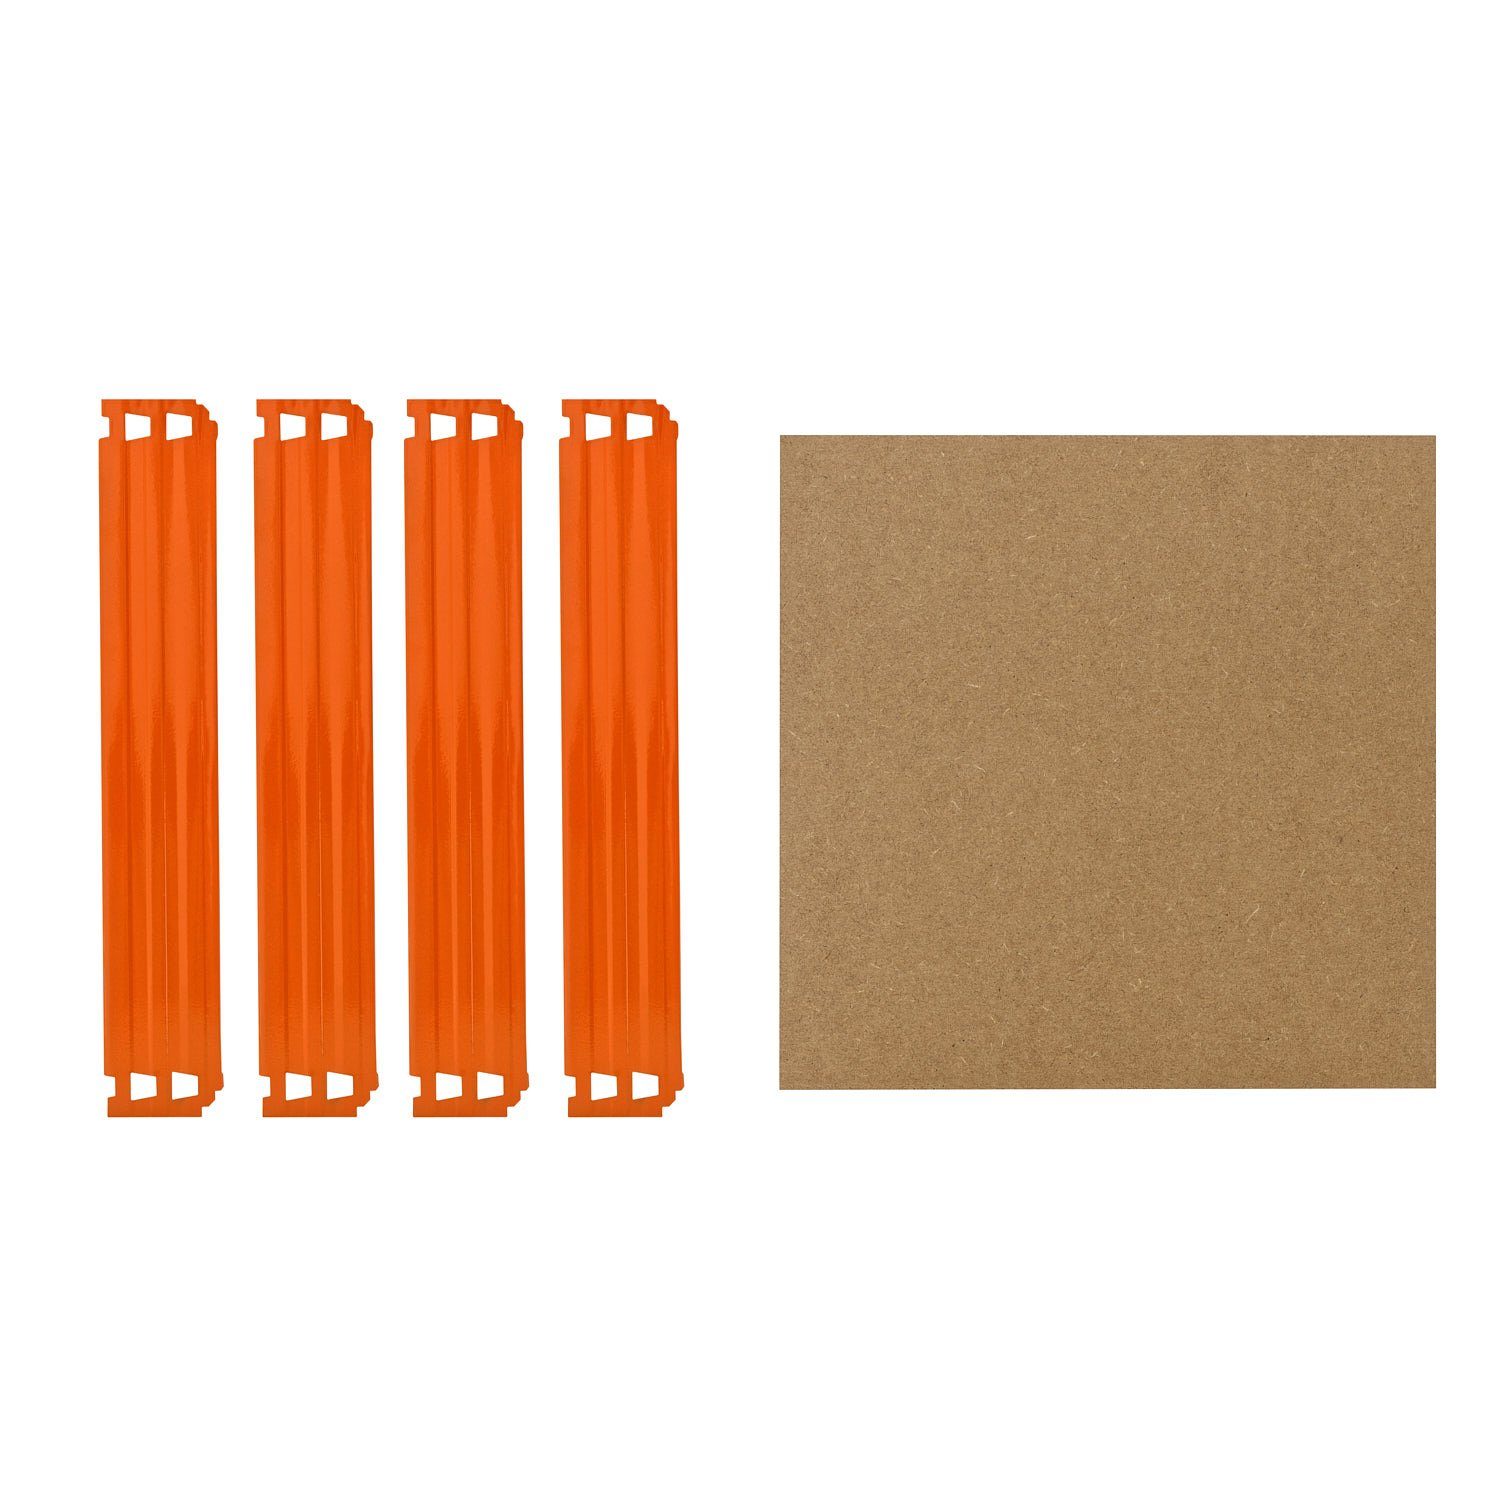 shelfplaza Schwerlastregal PROFI, Komplettes Fachboden-Set für 30x30 cm Steckregale in blau-orange, HDF-Fachboden, zusätzliche Fachböden für Schwerlastregale